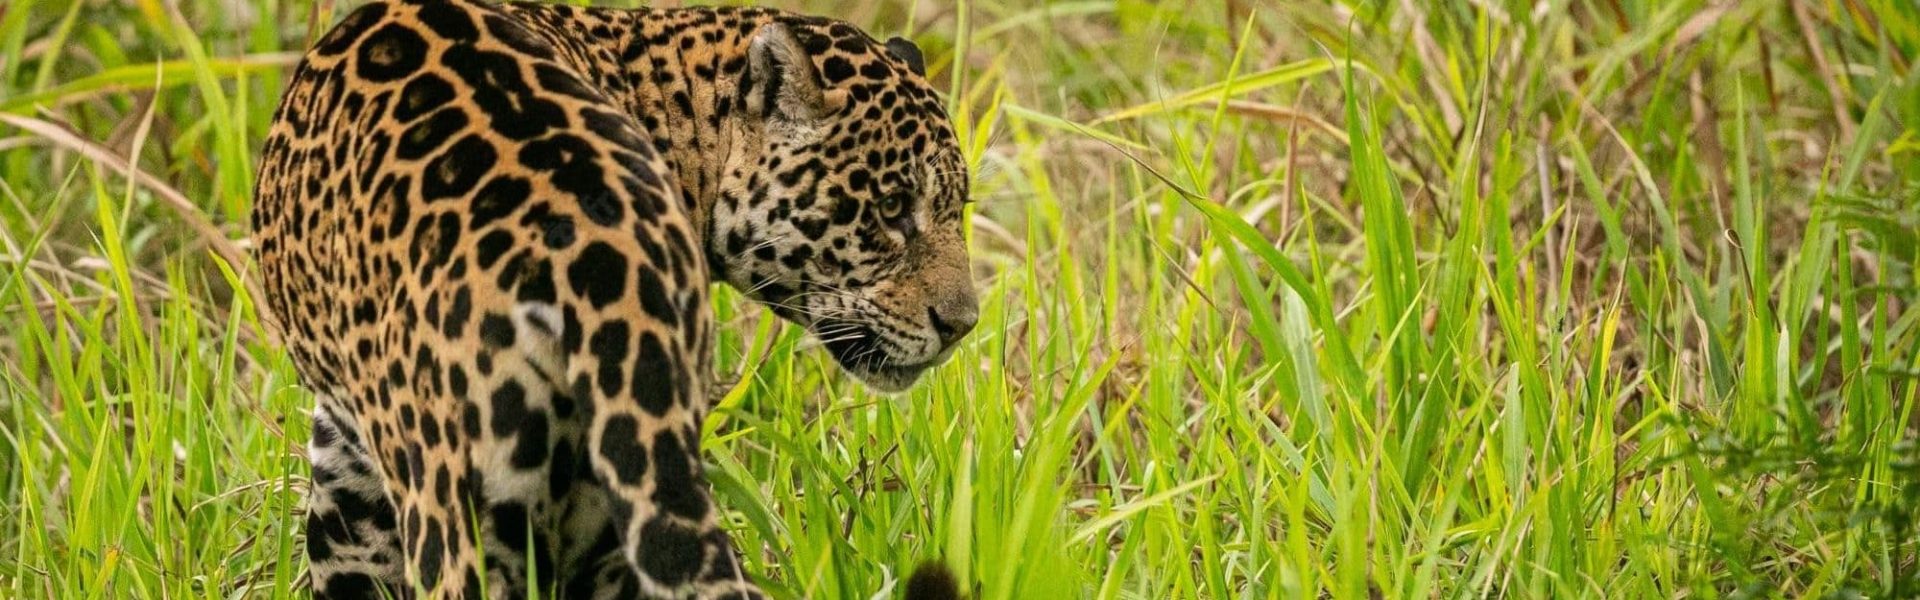 Jaguar: Sp Panthera onca